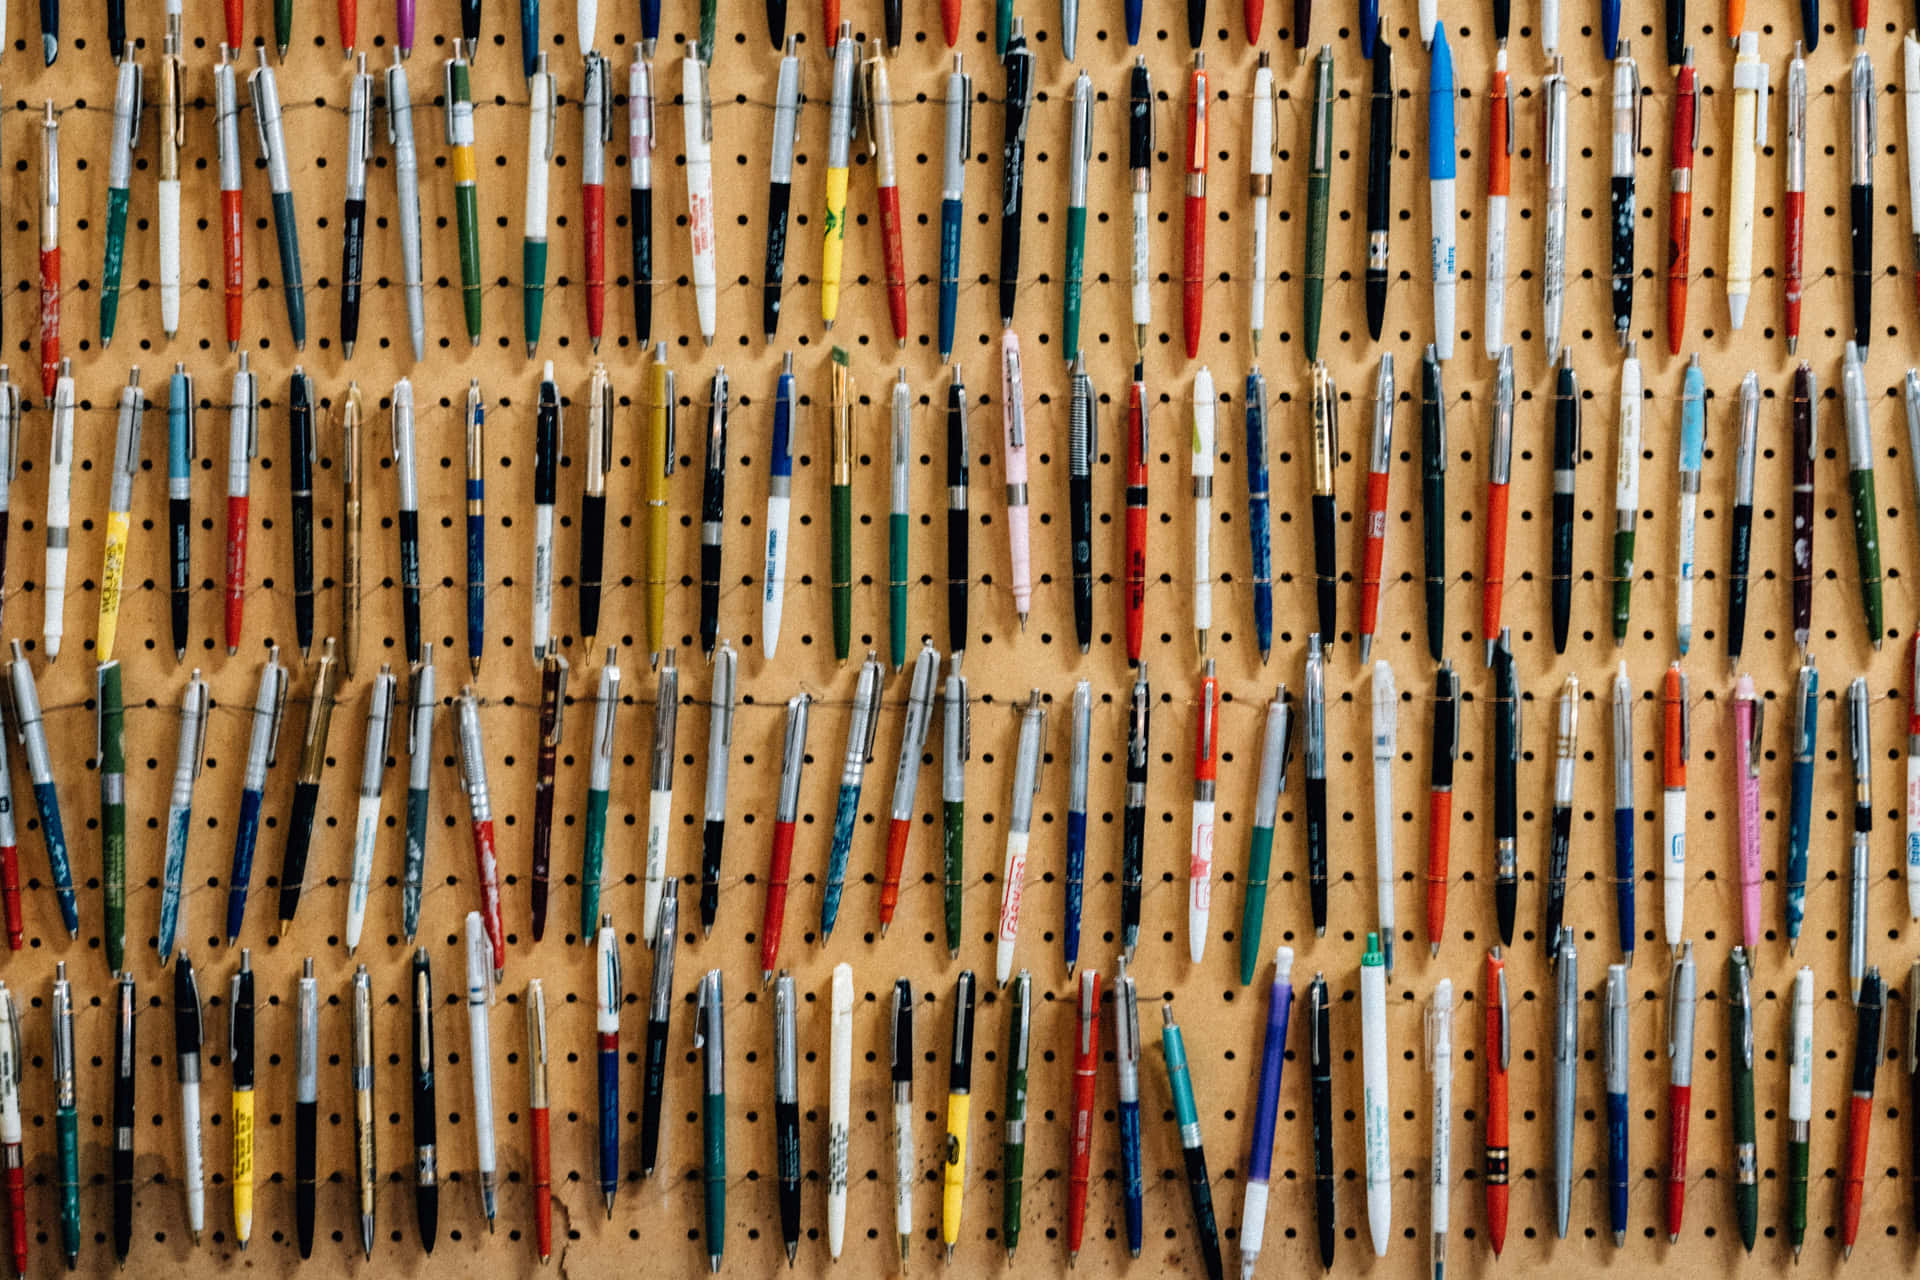 Repetitive Colorful Pens [wallpaper] Wallpaper